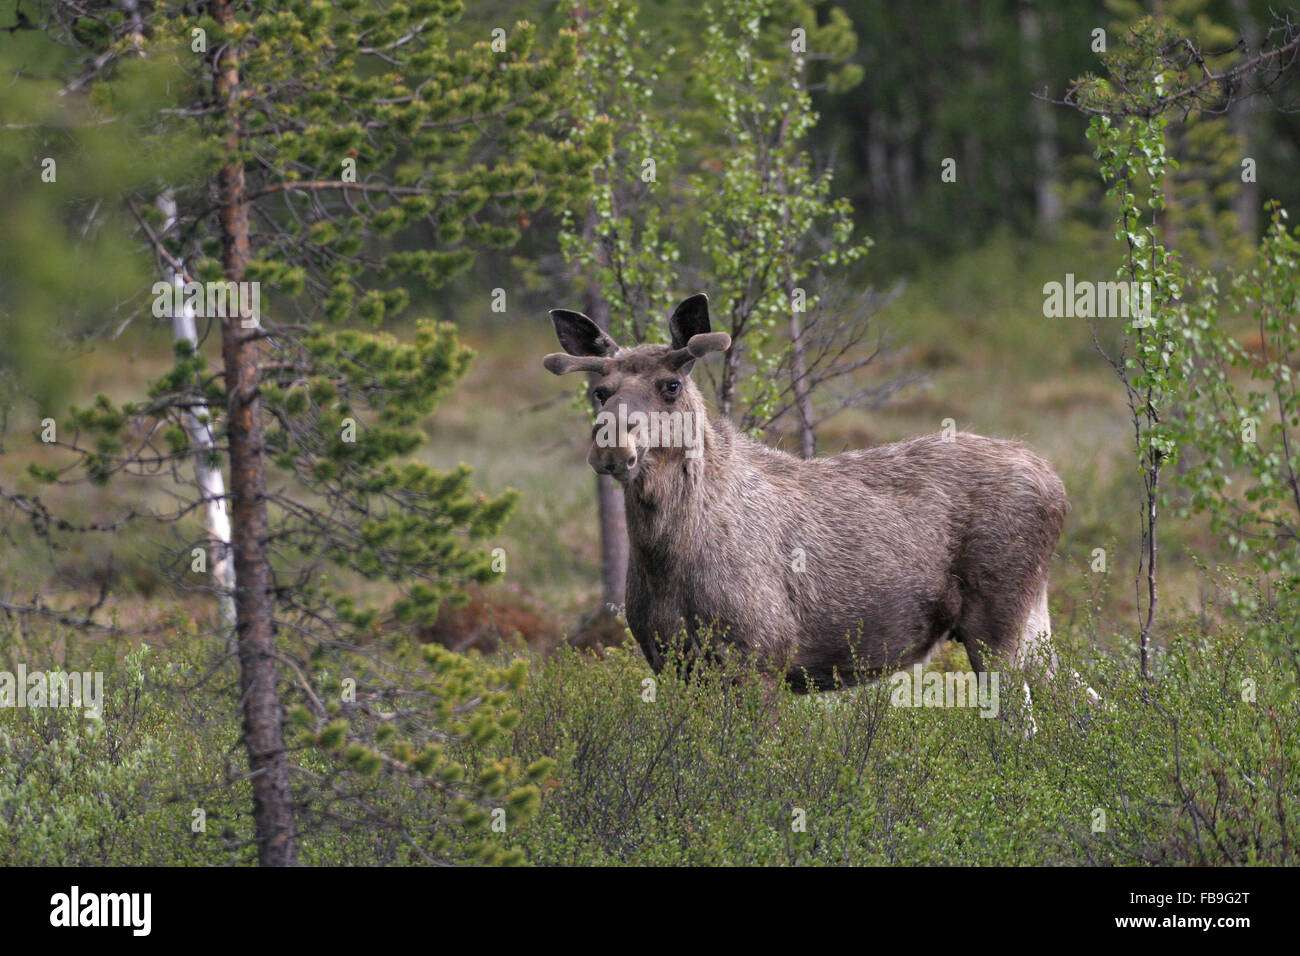 L'Élan (Alces dentelles), Bull parmi les buissons, la croissance des bois, bois recouvert de velours, Karelia, Finlande Banque D'Images